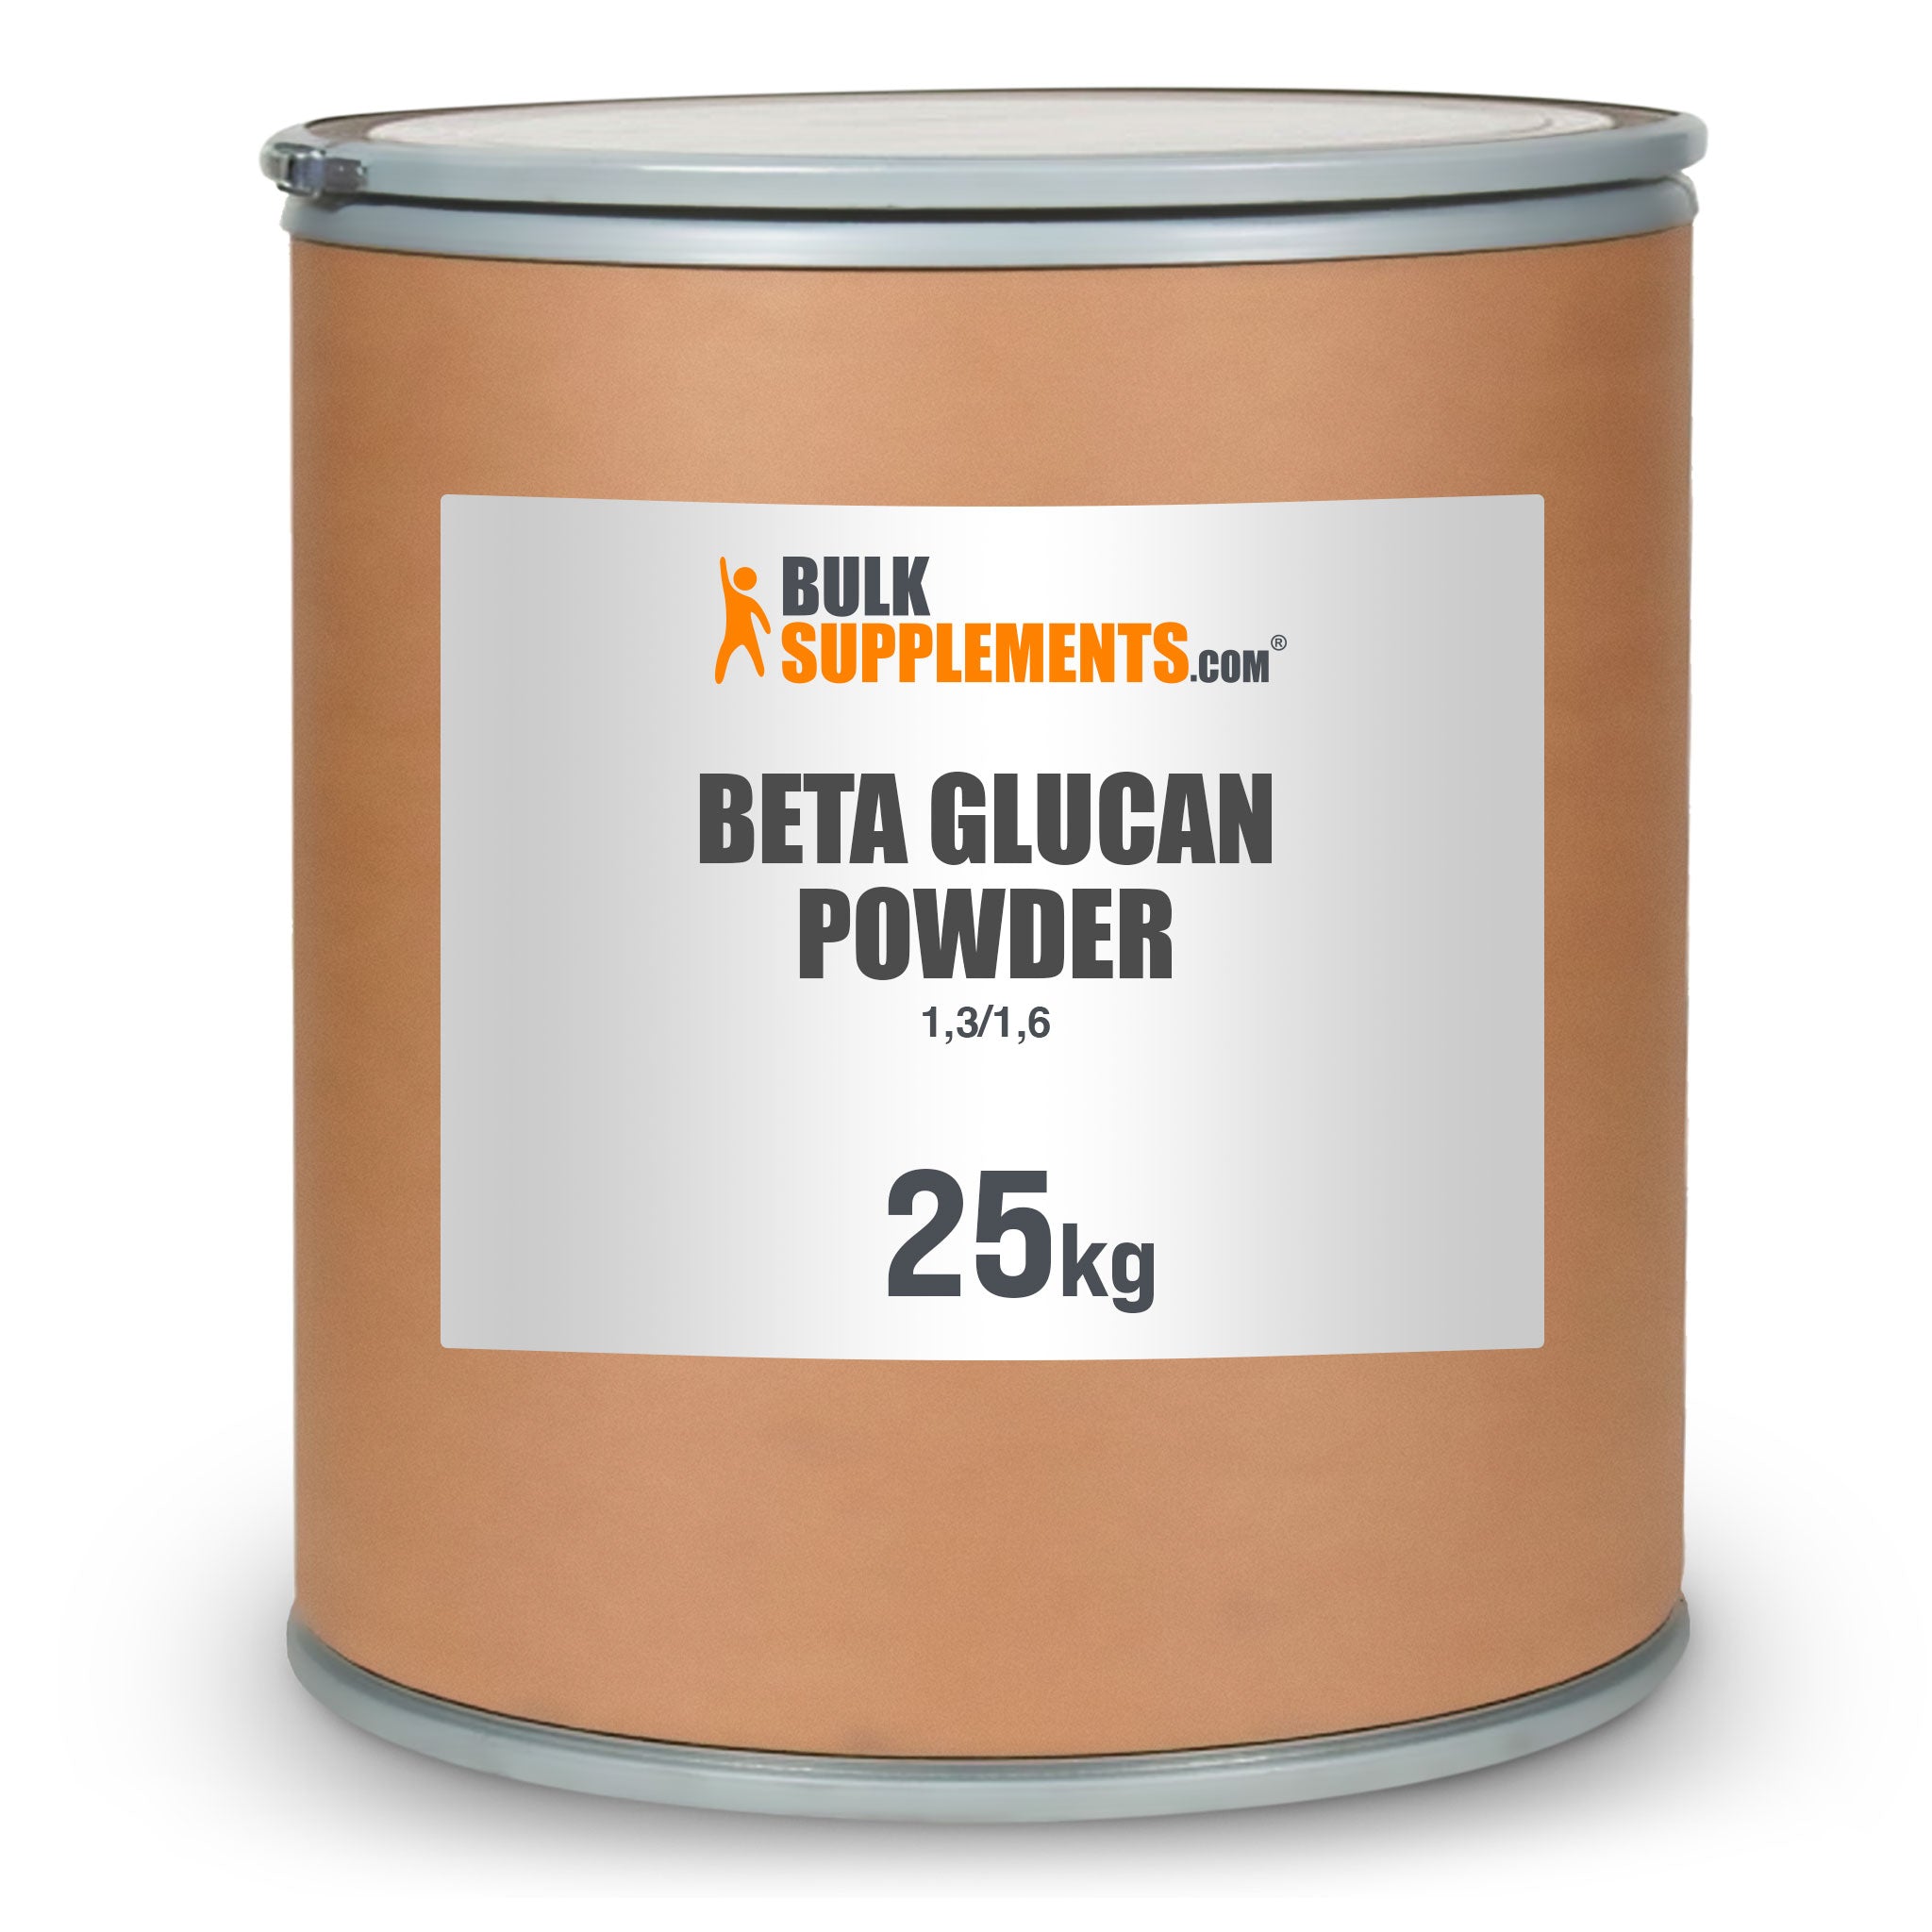 Wholesale Bulk Color Powder For Sale